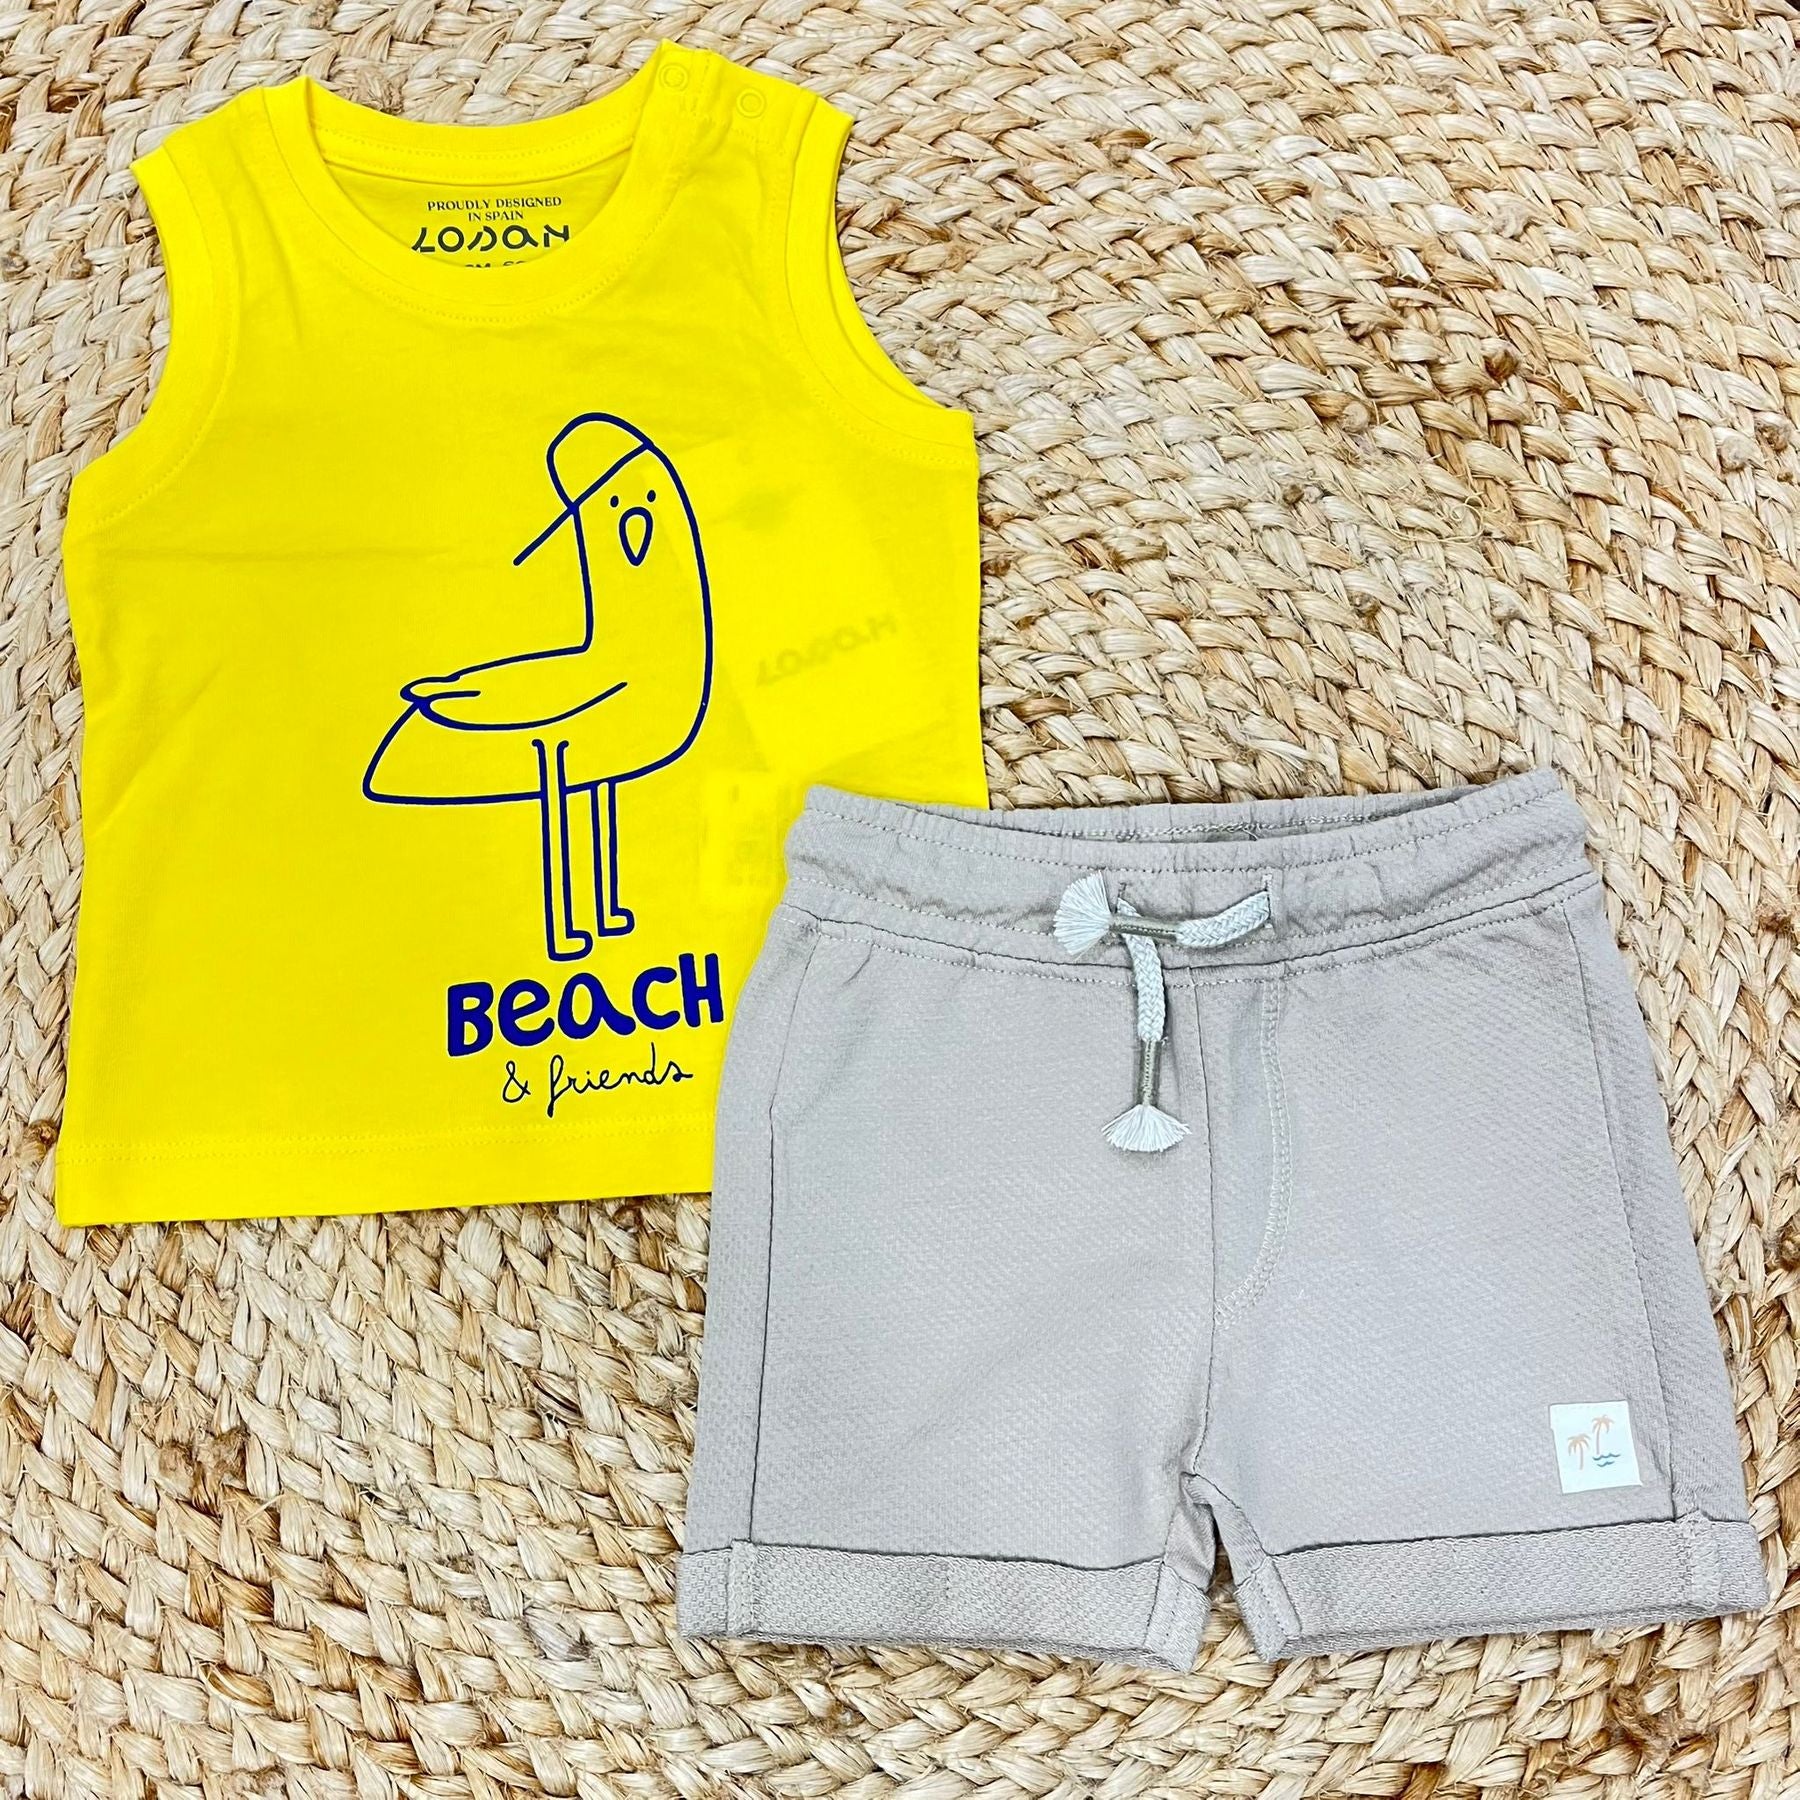 Losan Beach t-shirt and shorts